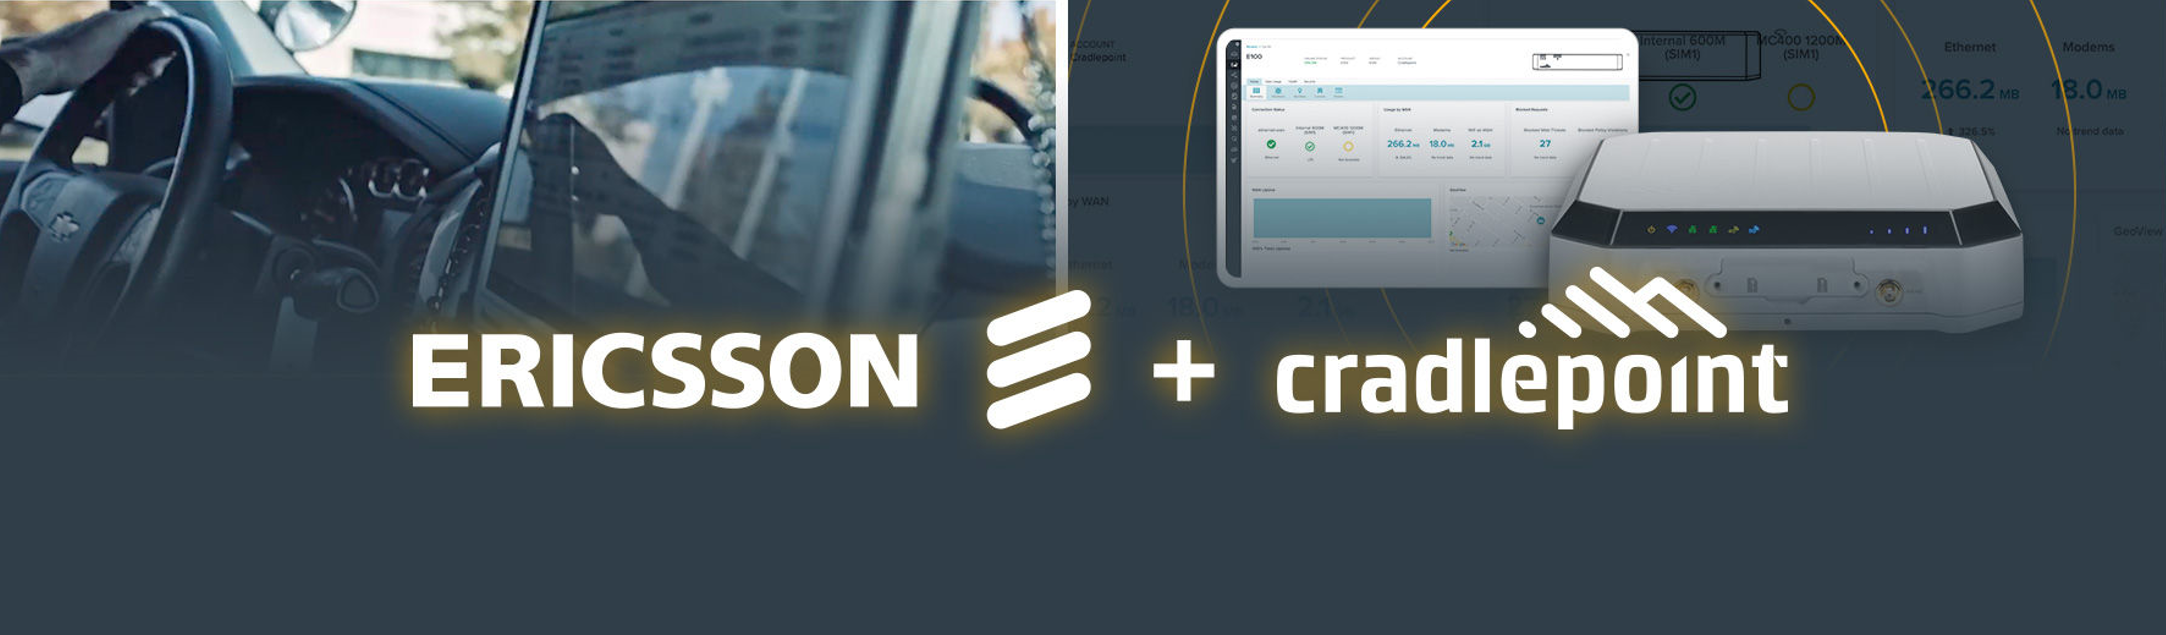 Ericsson acquisition of cradlepoint resized 2